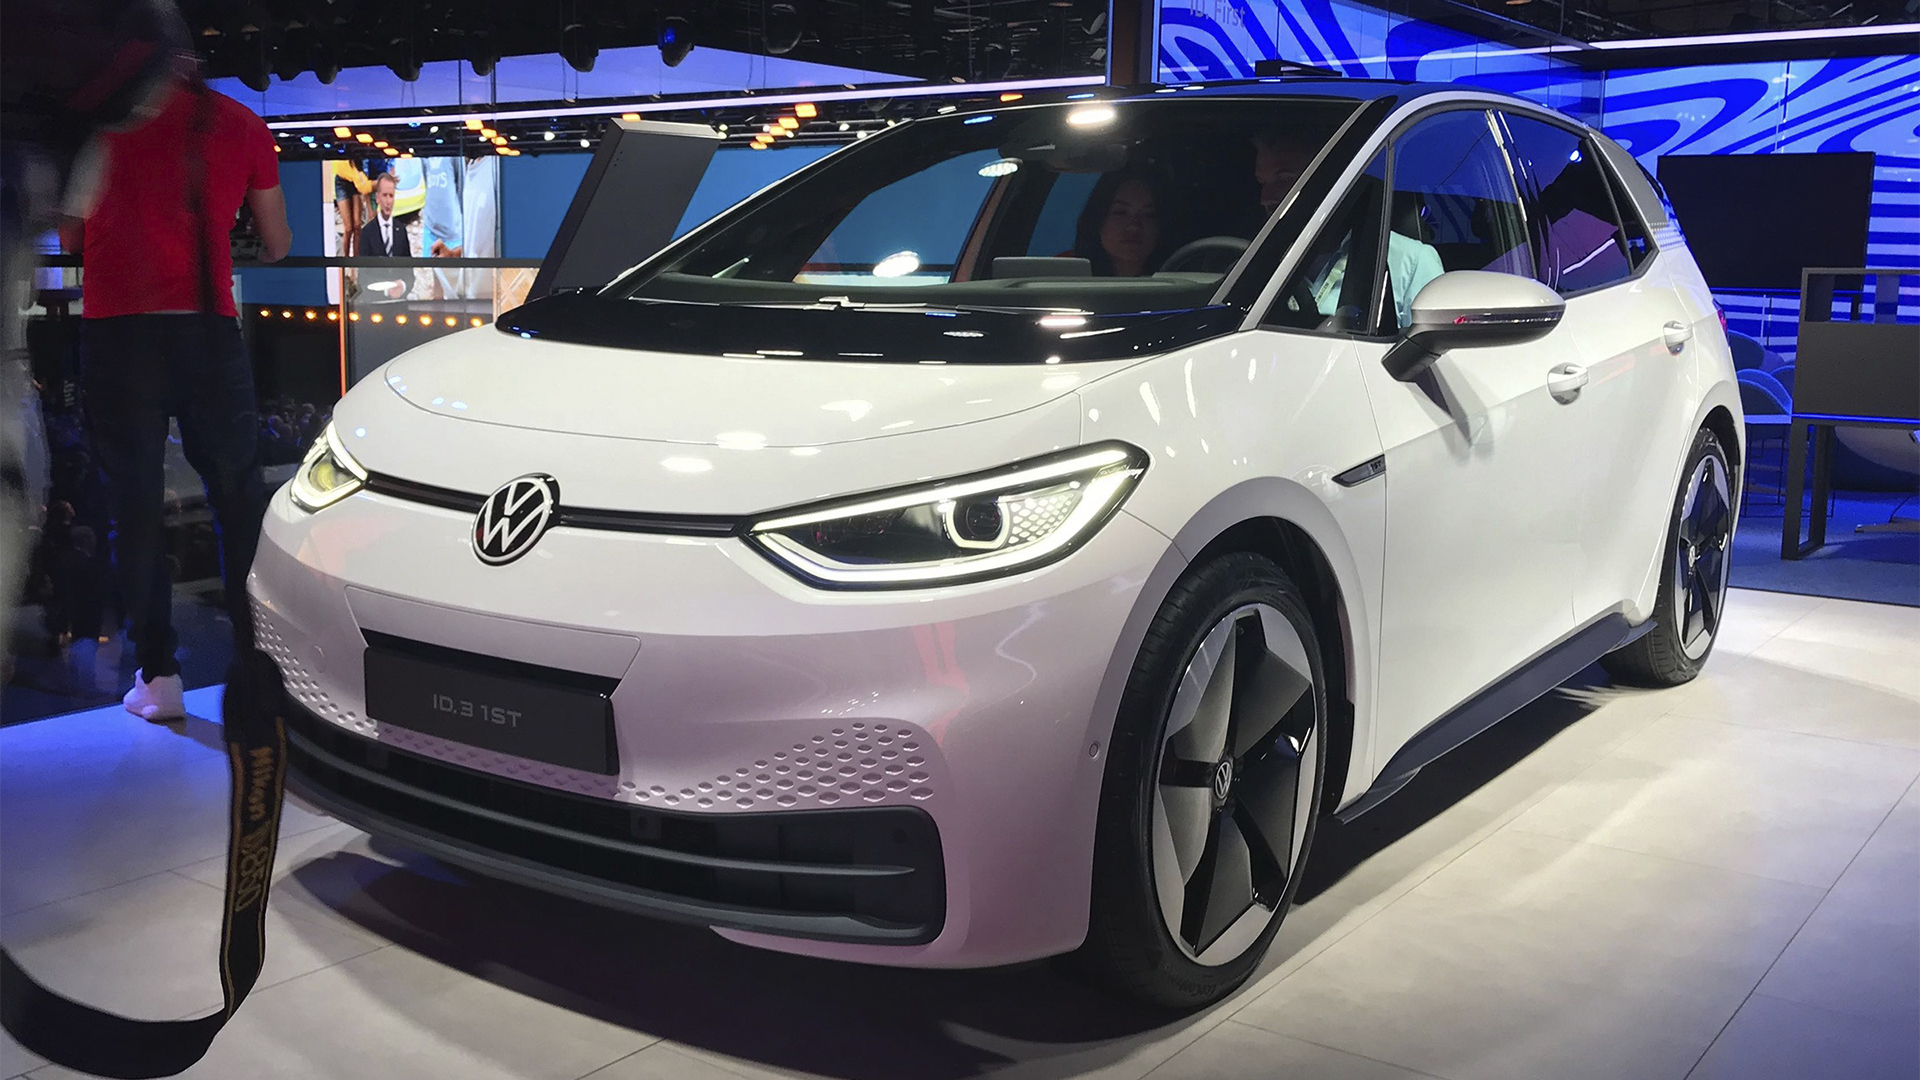 Carros elétricos baratos da Volkswagen! Montadora busca parceria com fabricante chinesa